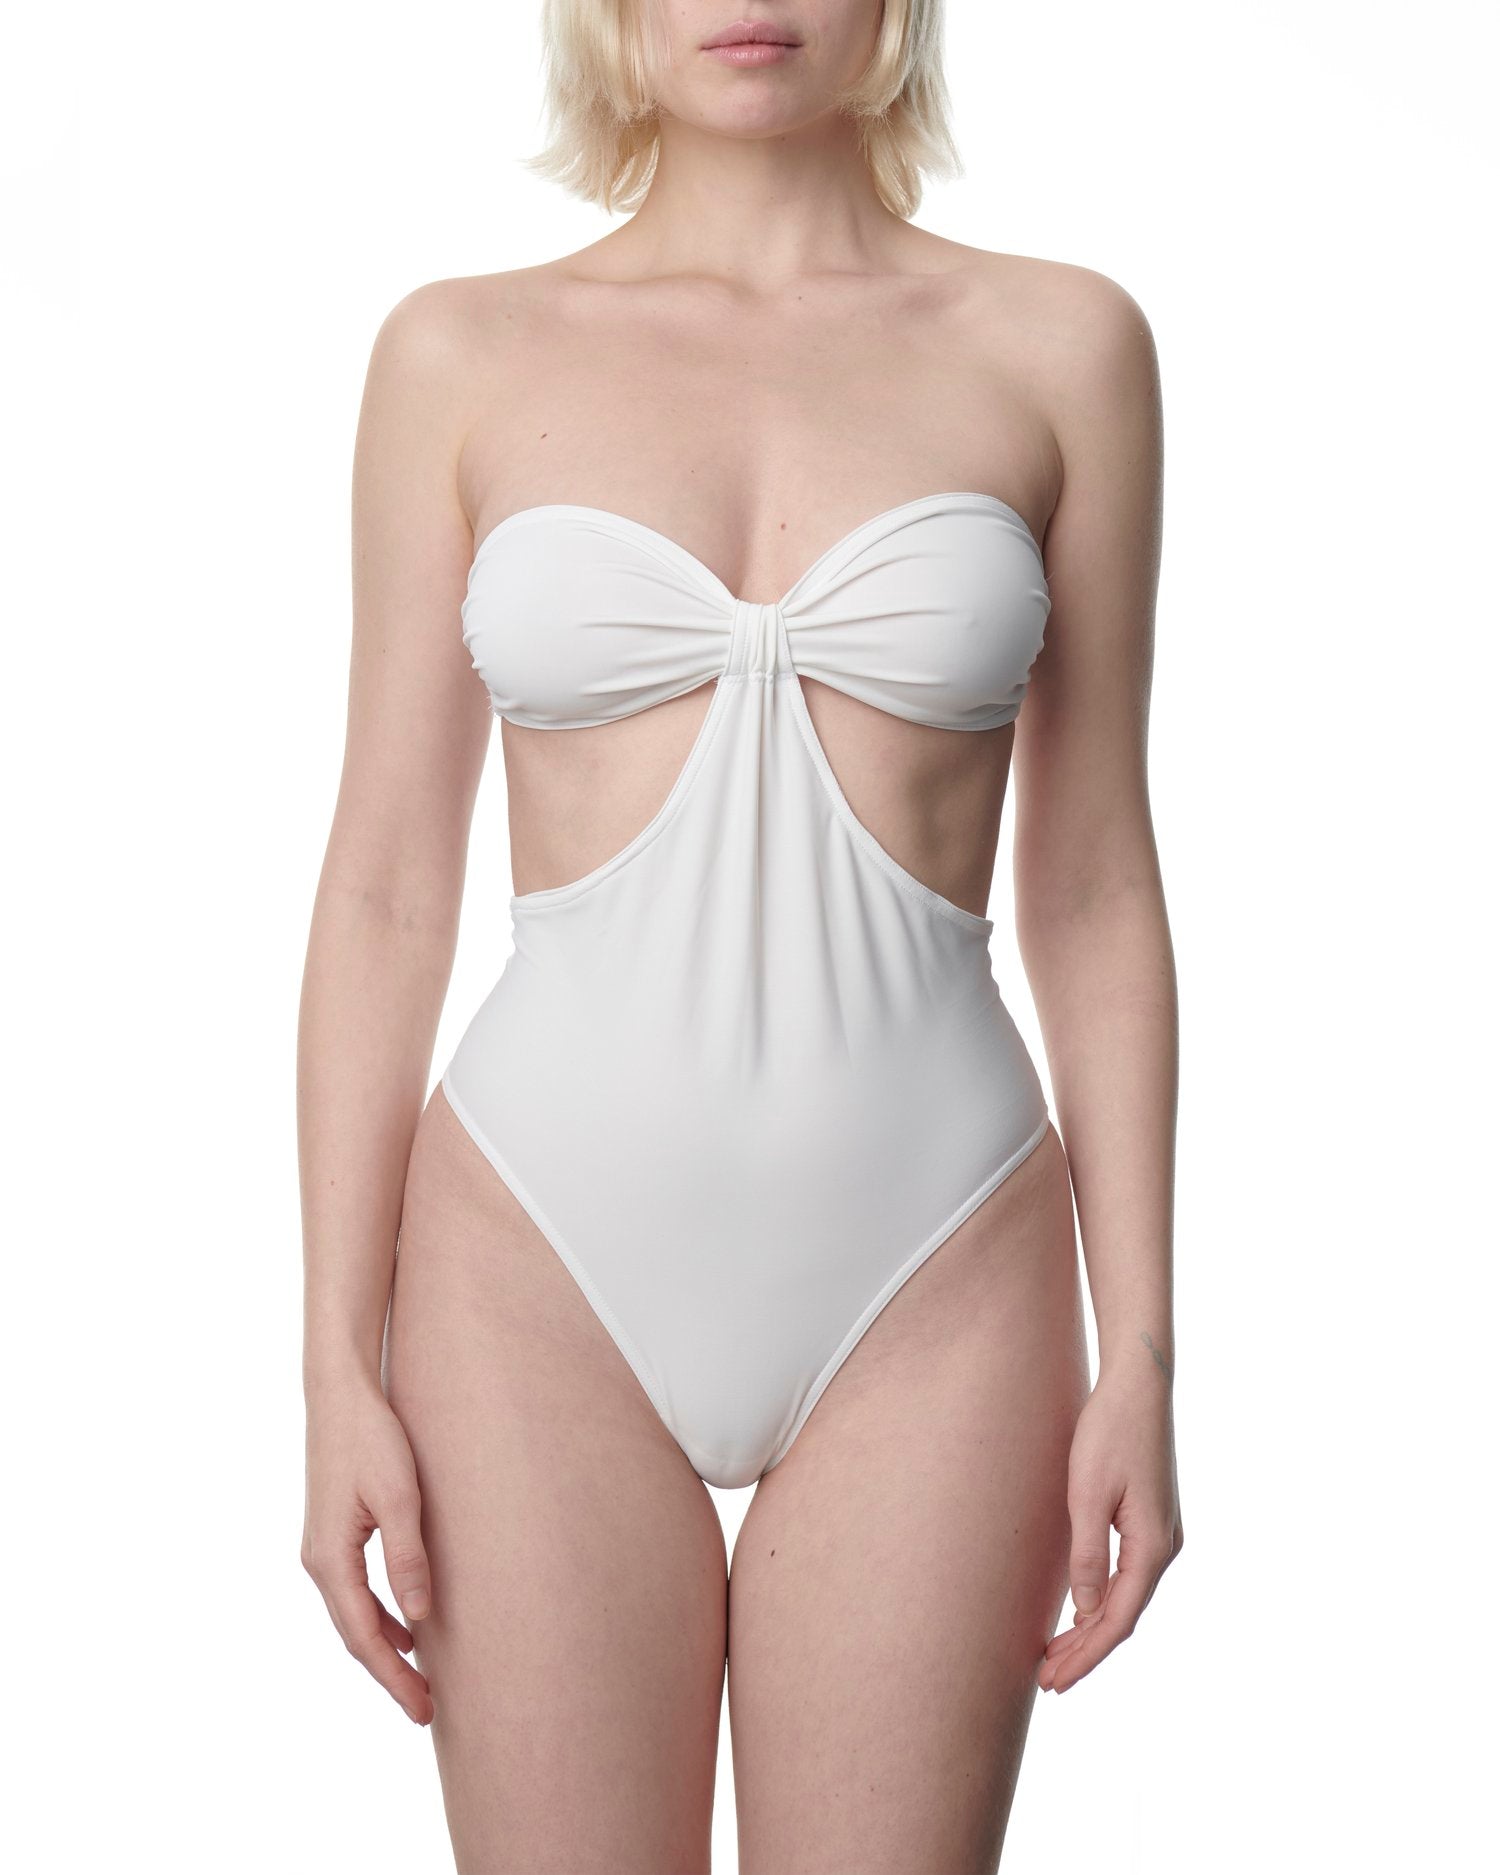 Biarritz swimsuit in white by Du Ciel